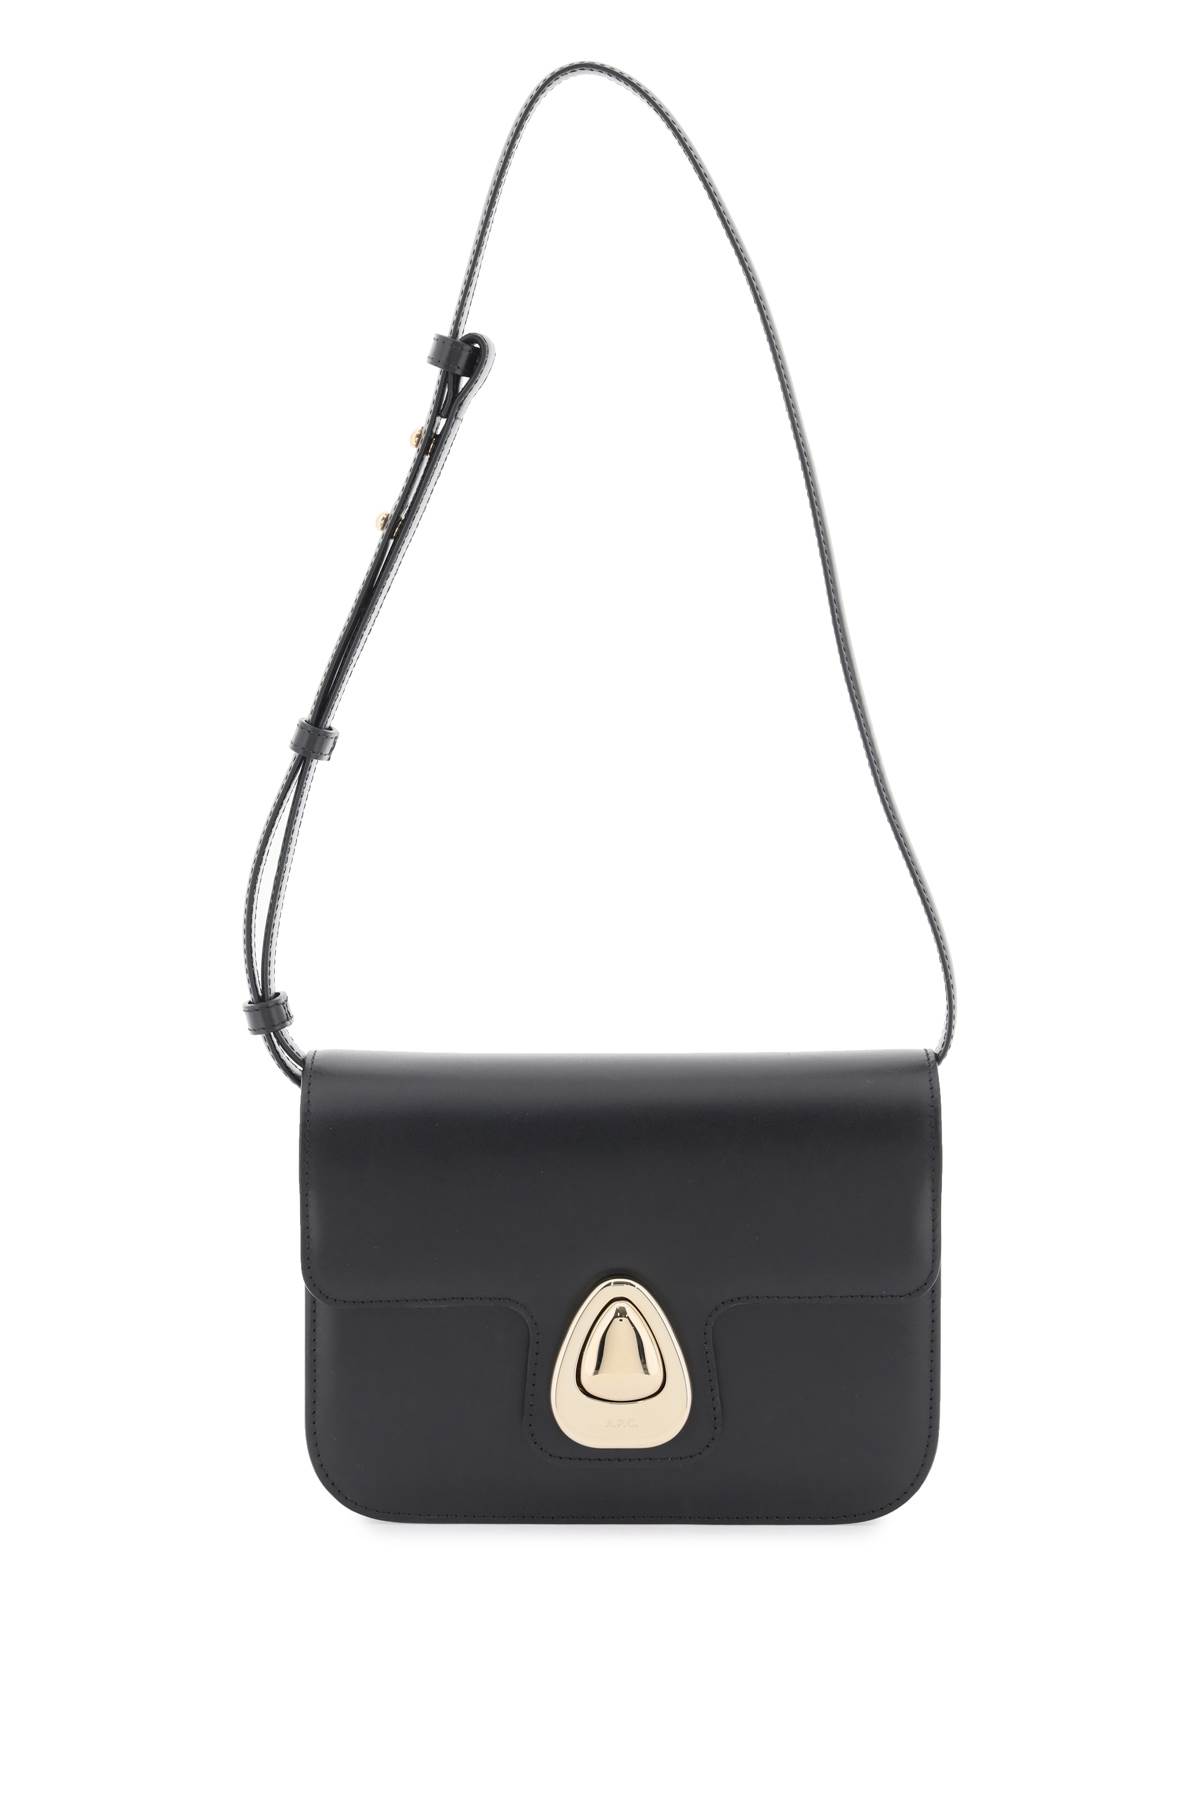 Apc Astra Small Bag In Black